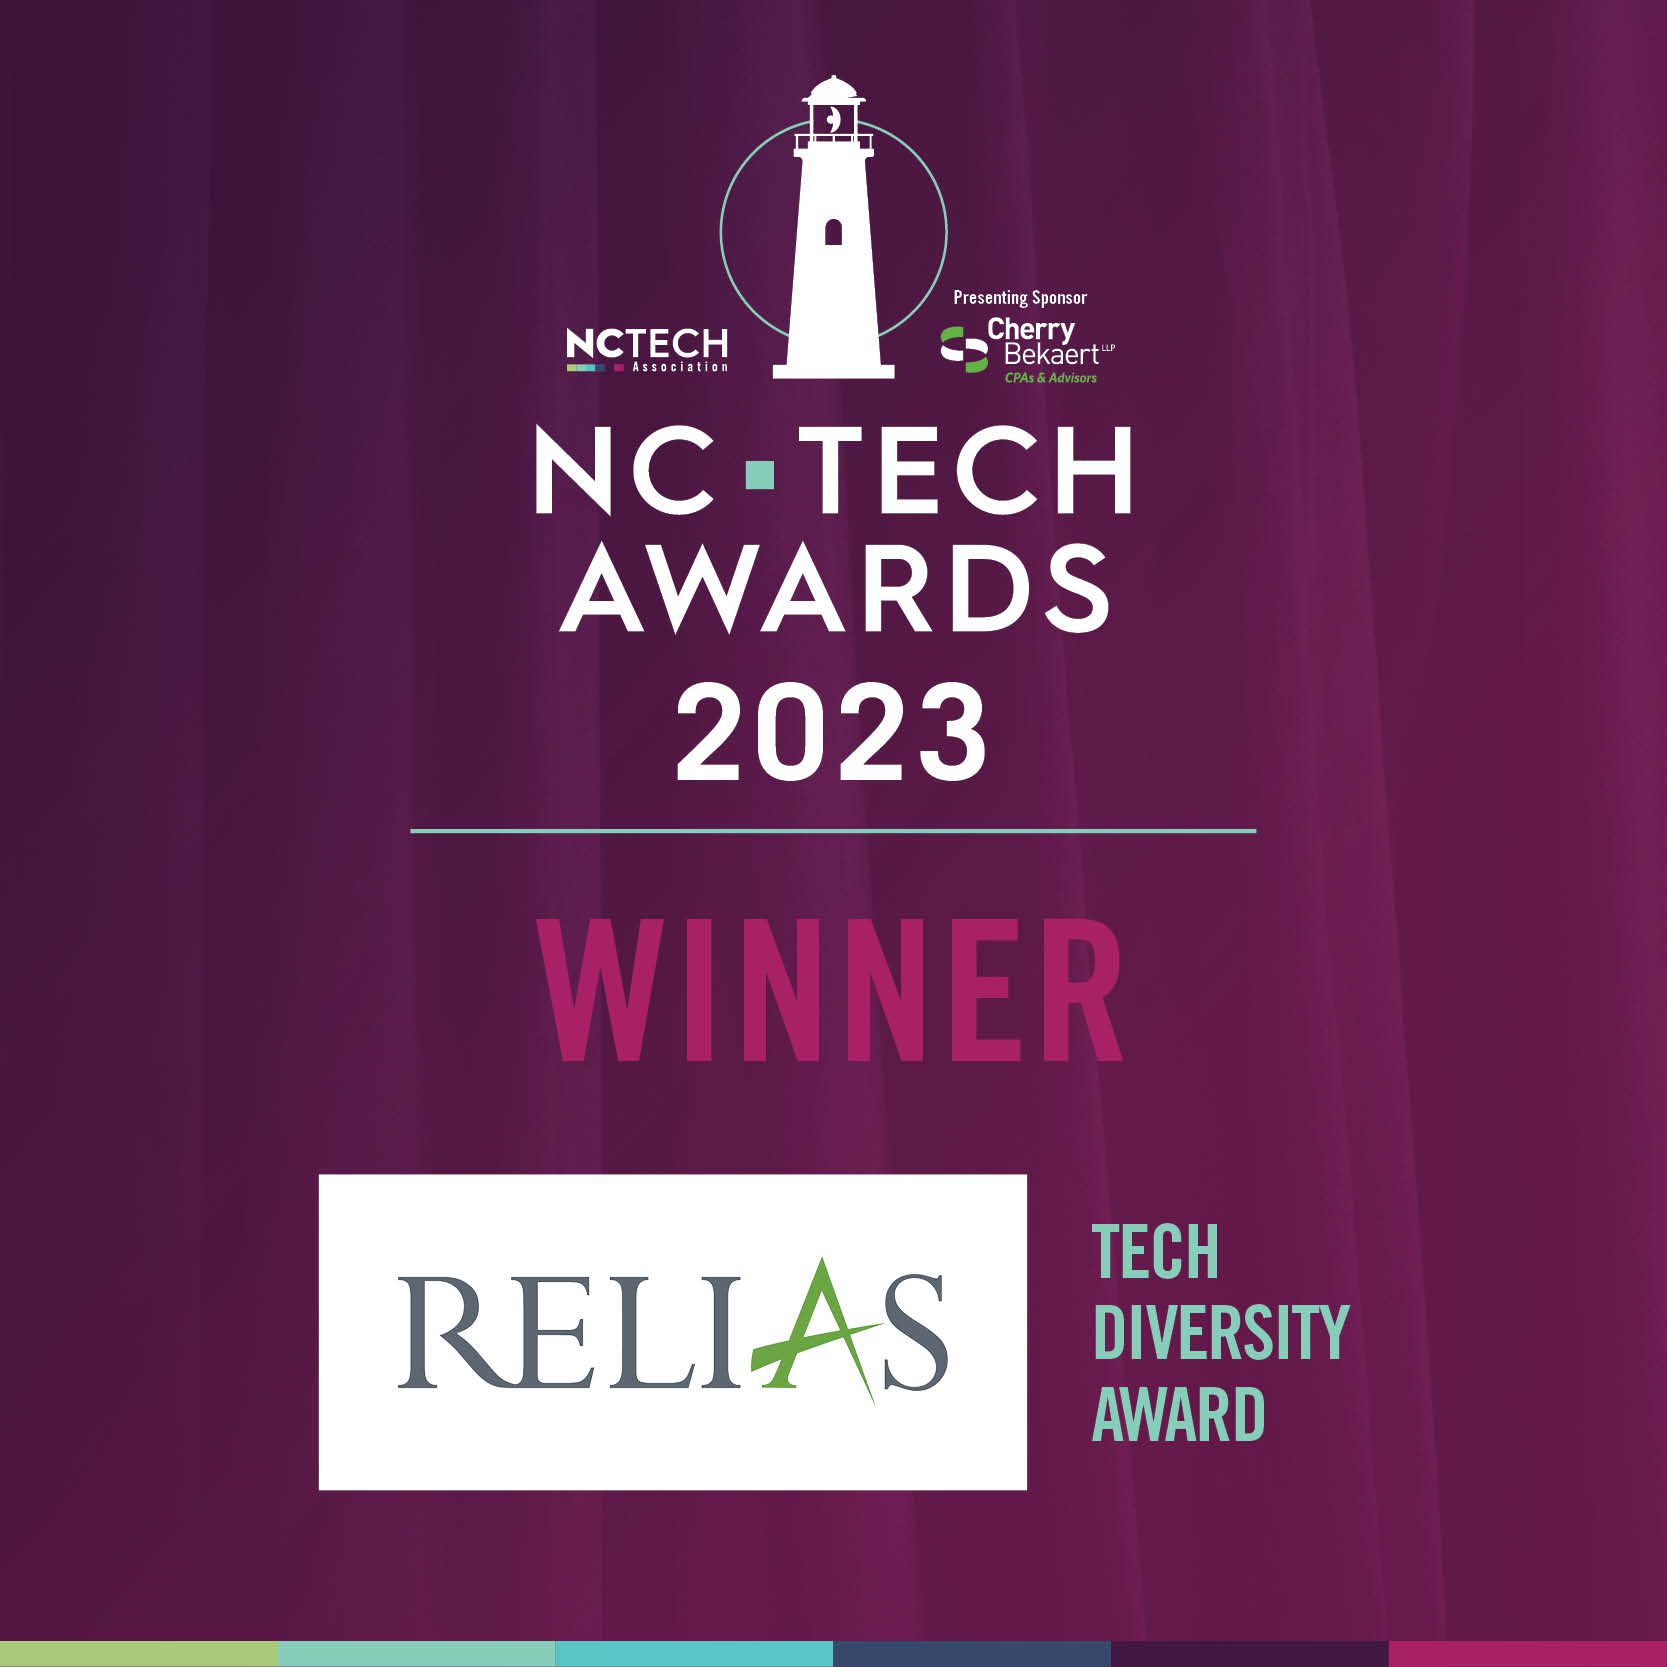 NC TECH Awards 2023 Tech Diversity Award